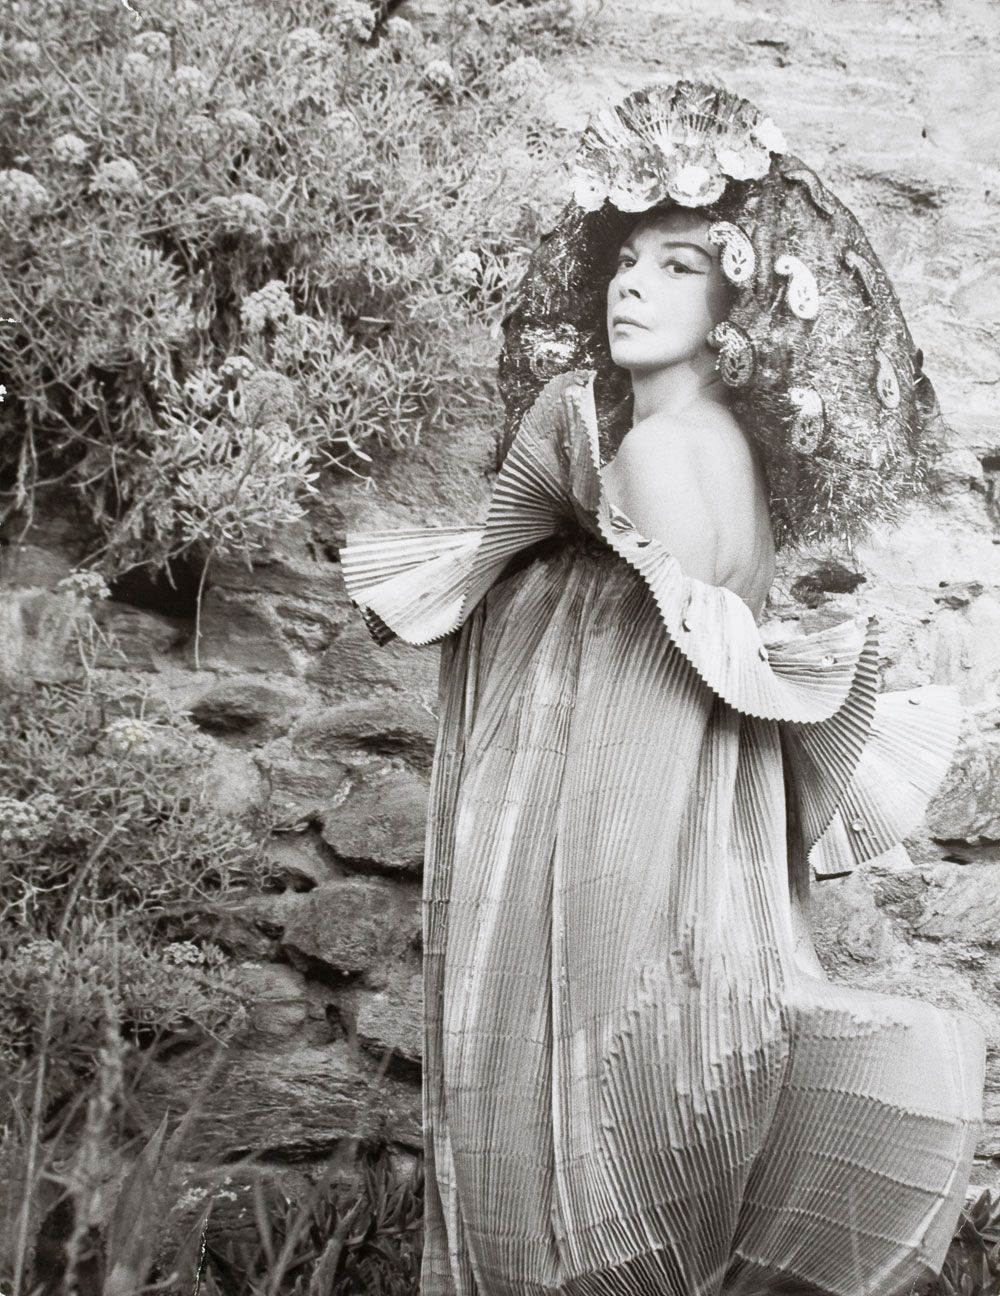 Leonor Fini au monastère de Nonza en Corse, photographiée par Eddy Brofferio, 1965